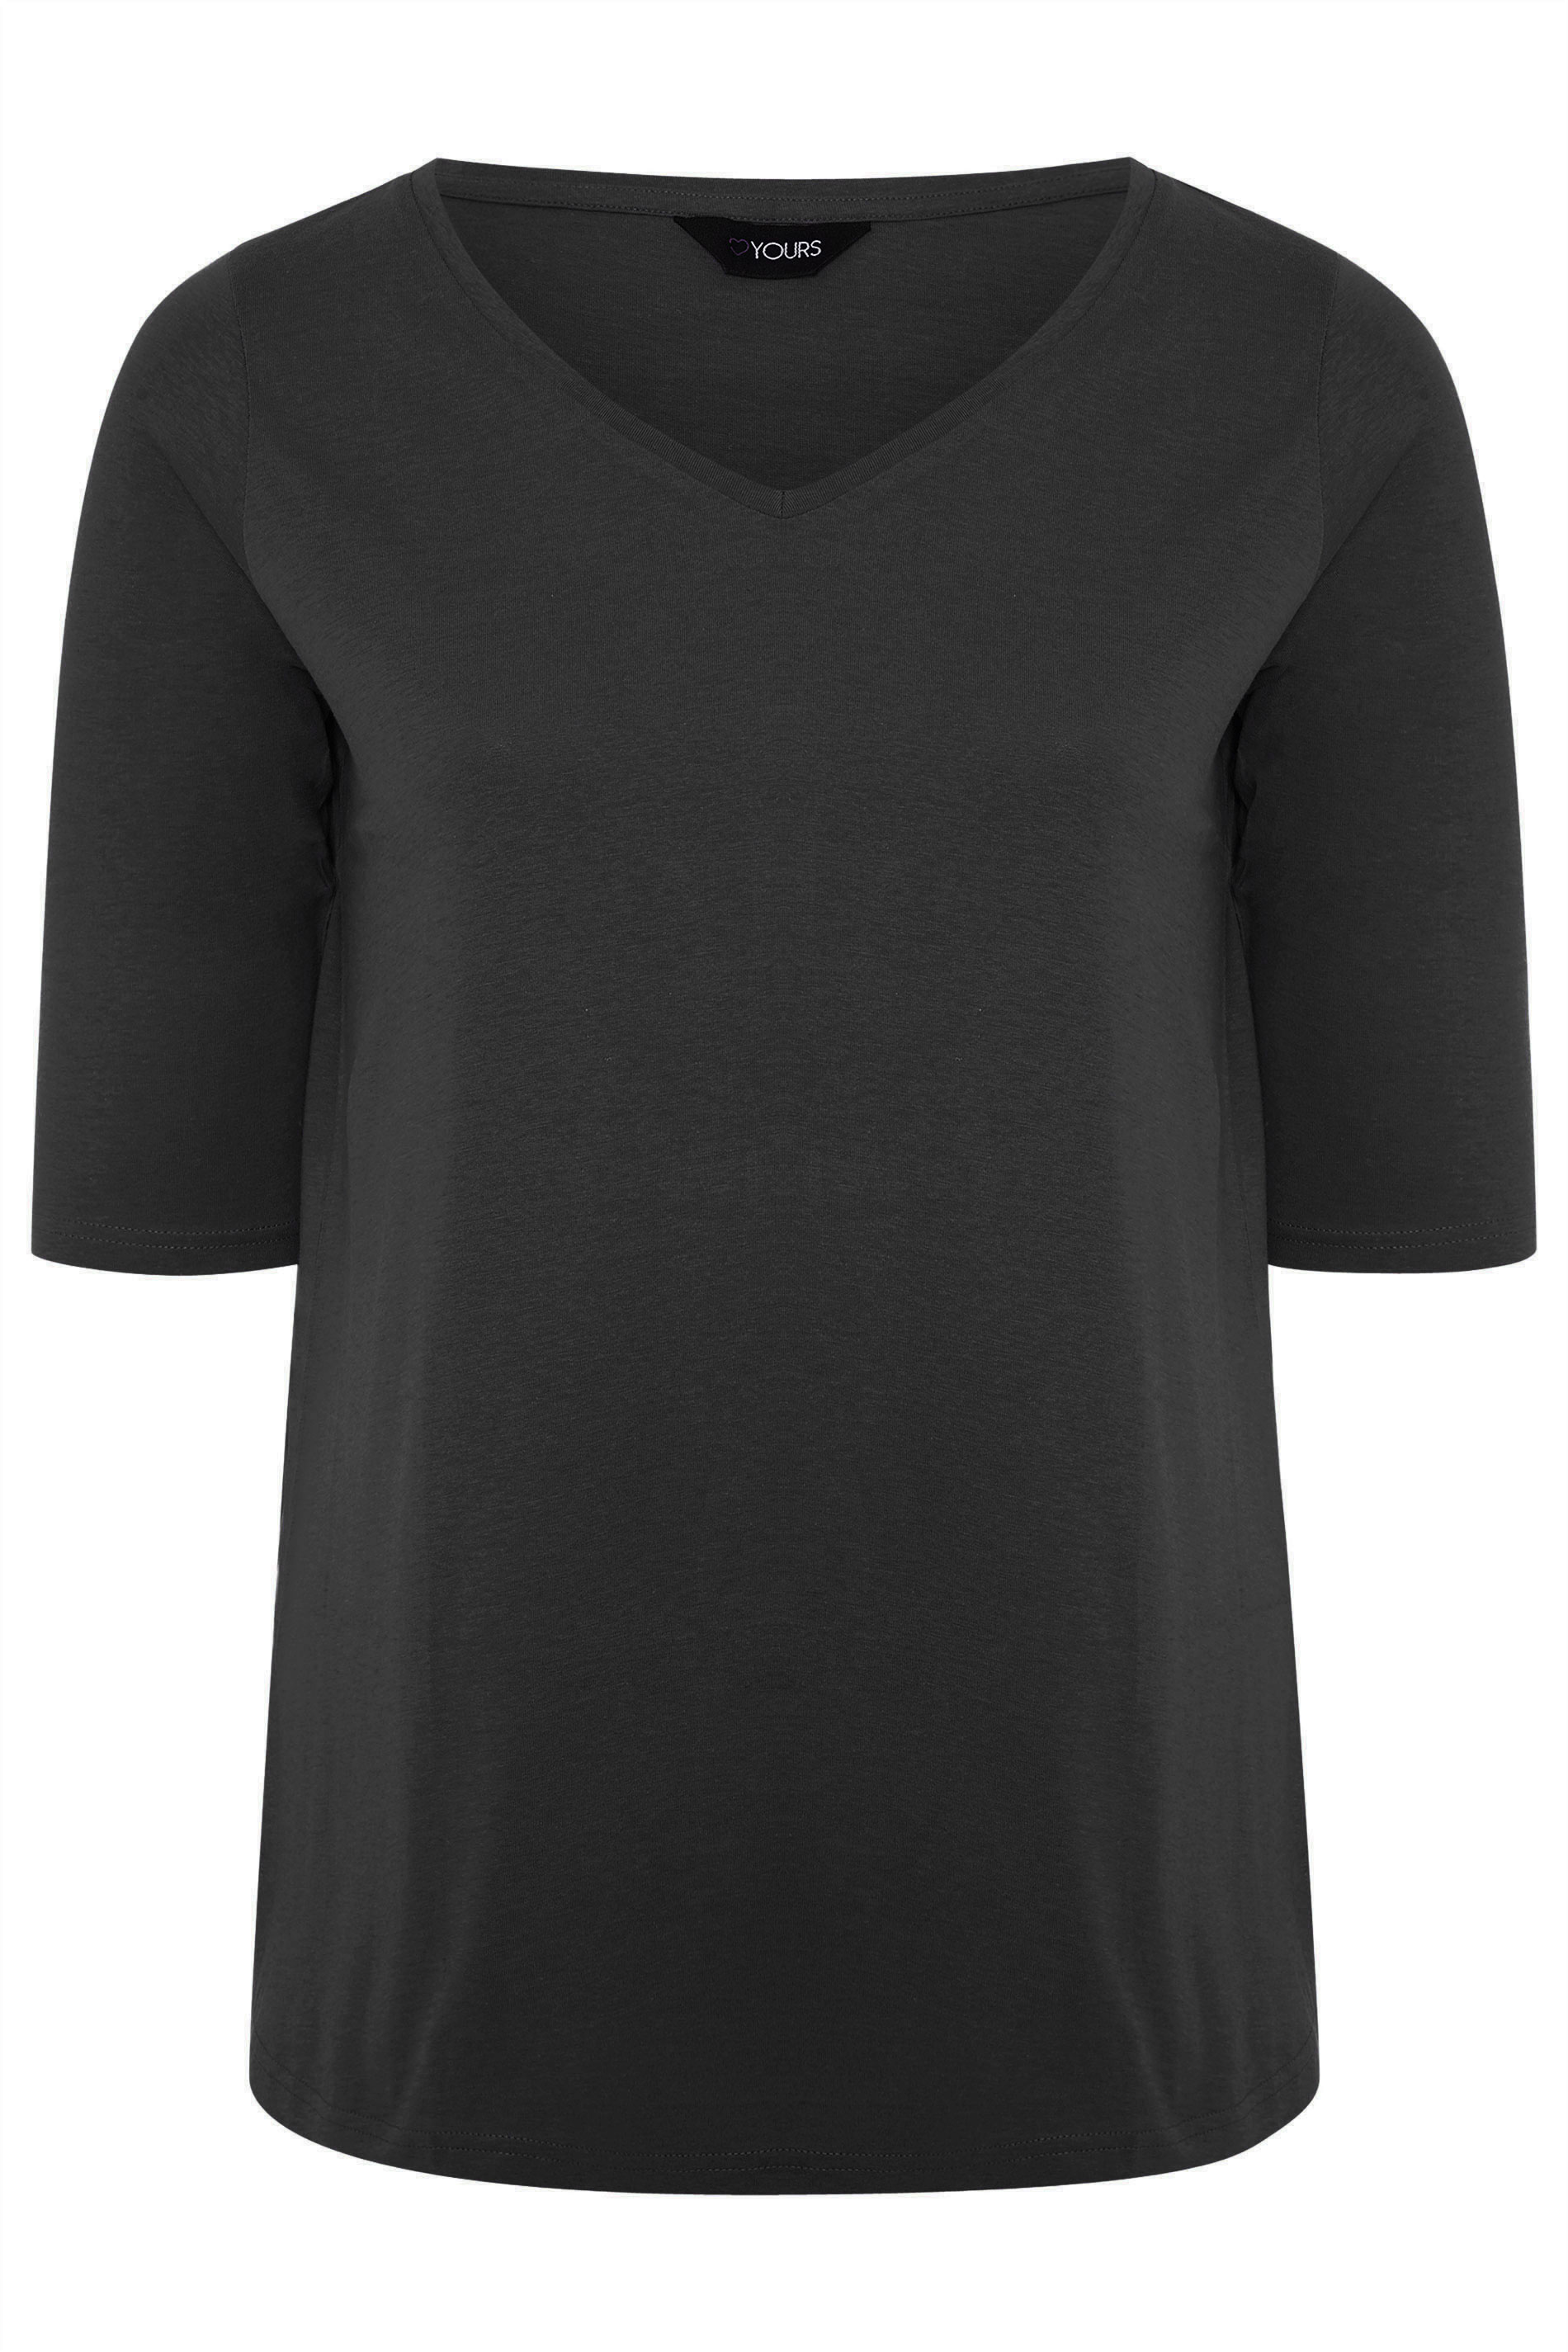 Grande taille  Tops Grande taille  T-Shirts Basiques & Débardeurs | Top Noir en Coton Encolure en V - RG75023